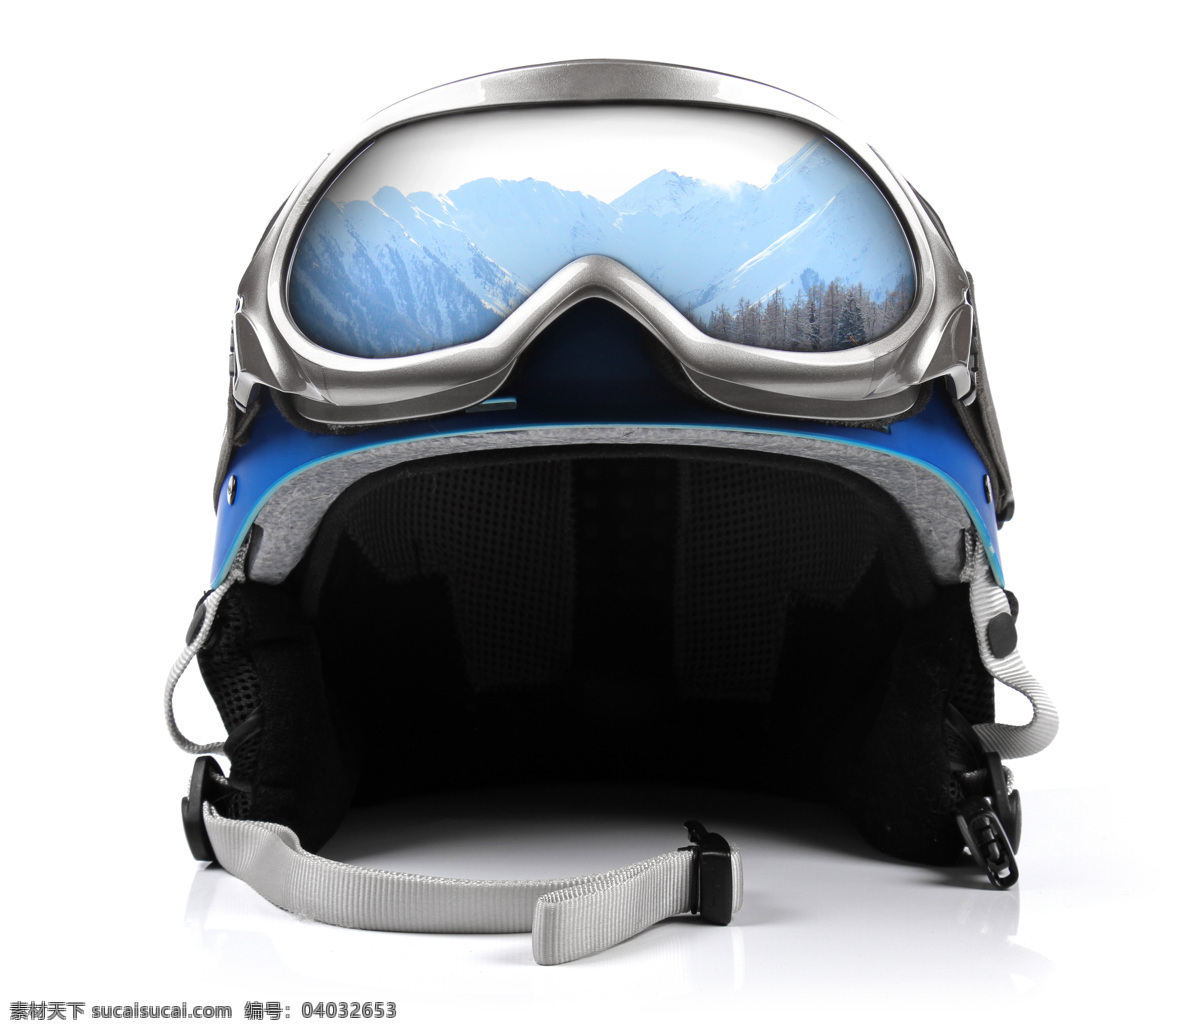 滑雪 眼镜 头盔 滑雪眼镜 滑雪头盔 滑雪帽子 滑雪装备 体育运动 生活百科 白色